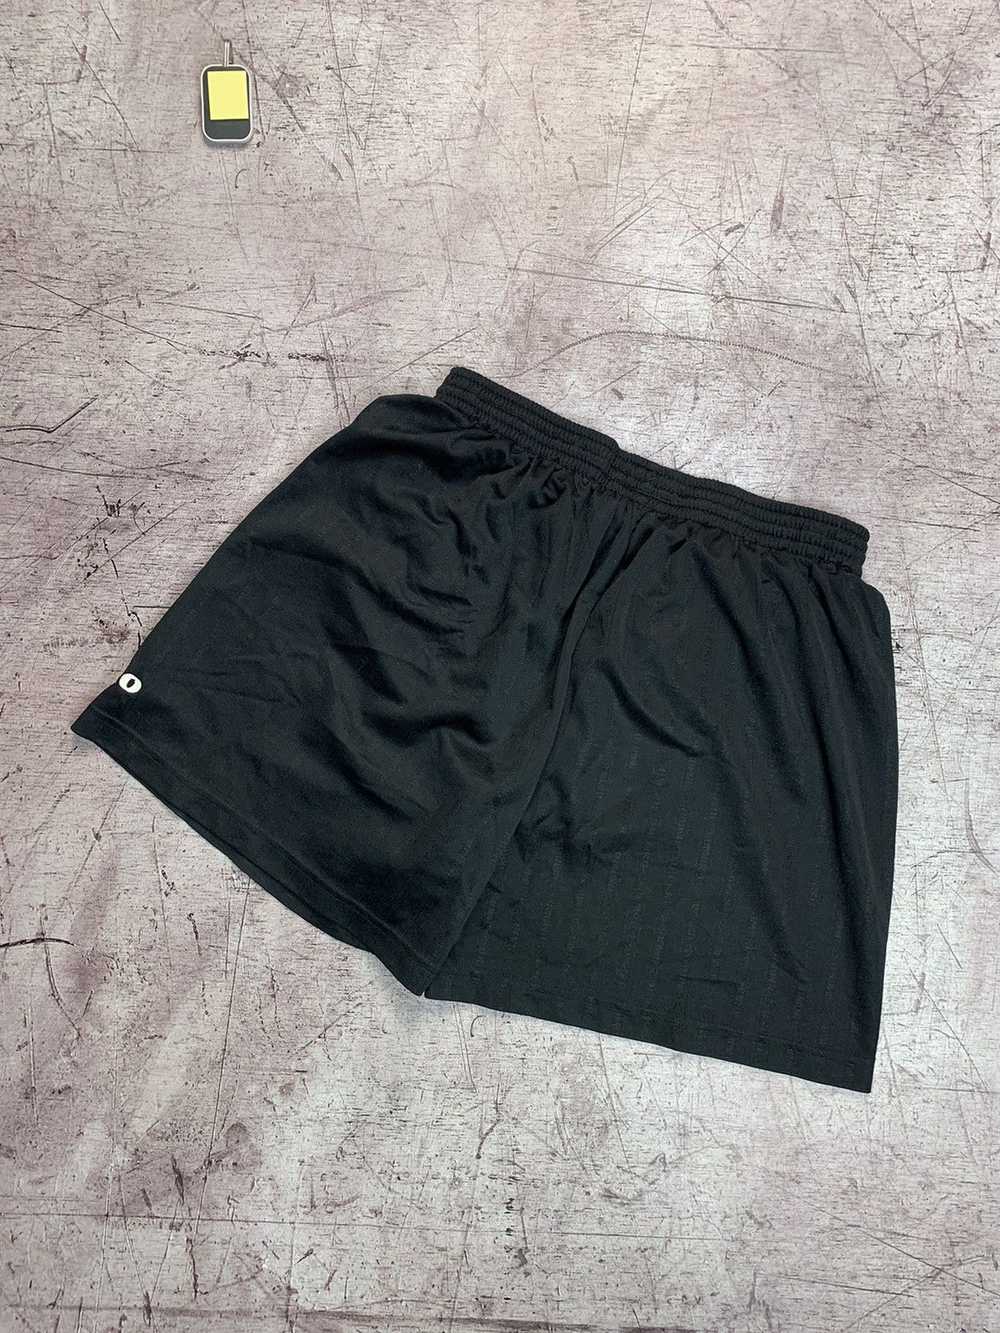 Sportswear × Umbro × Vintage Vintage Umbro Shorts - image 2